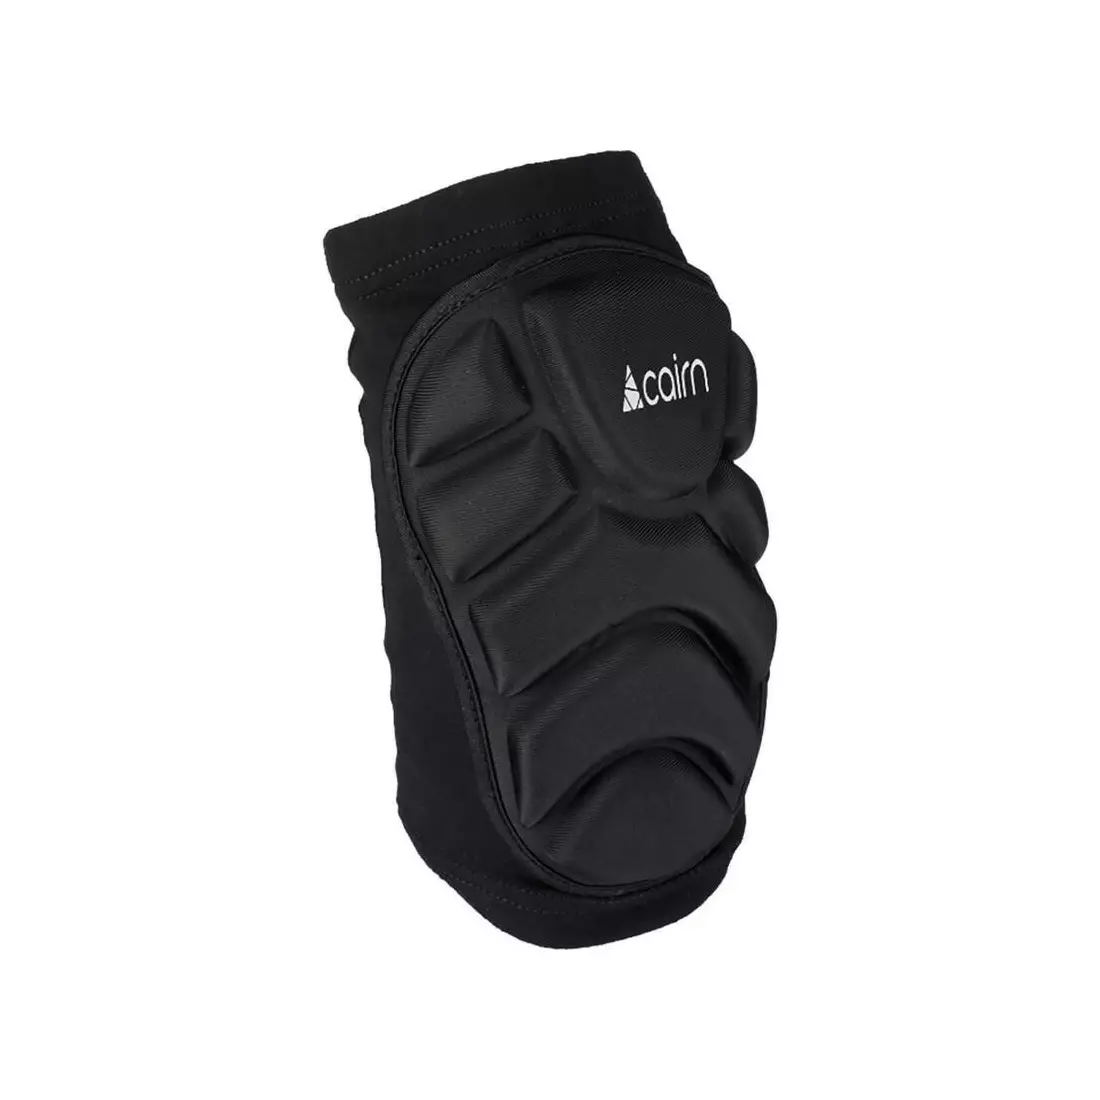 CAIRN PROTYL Ochraniacze na kolana narty / snowboard, czarny